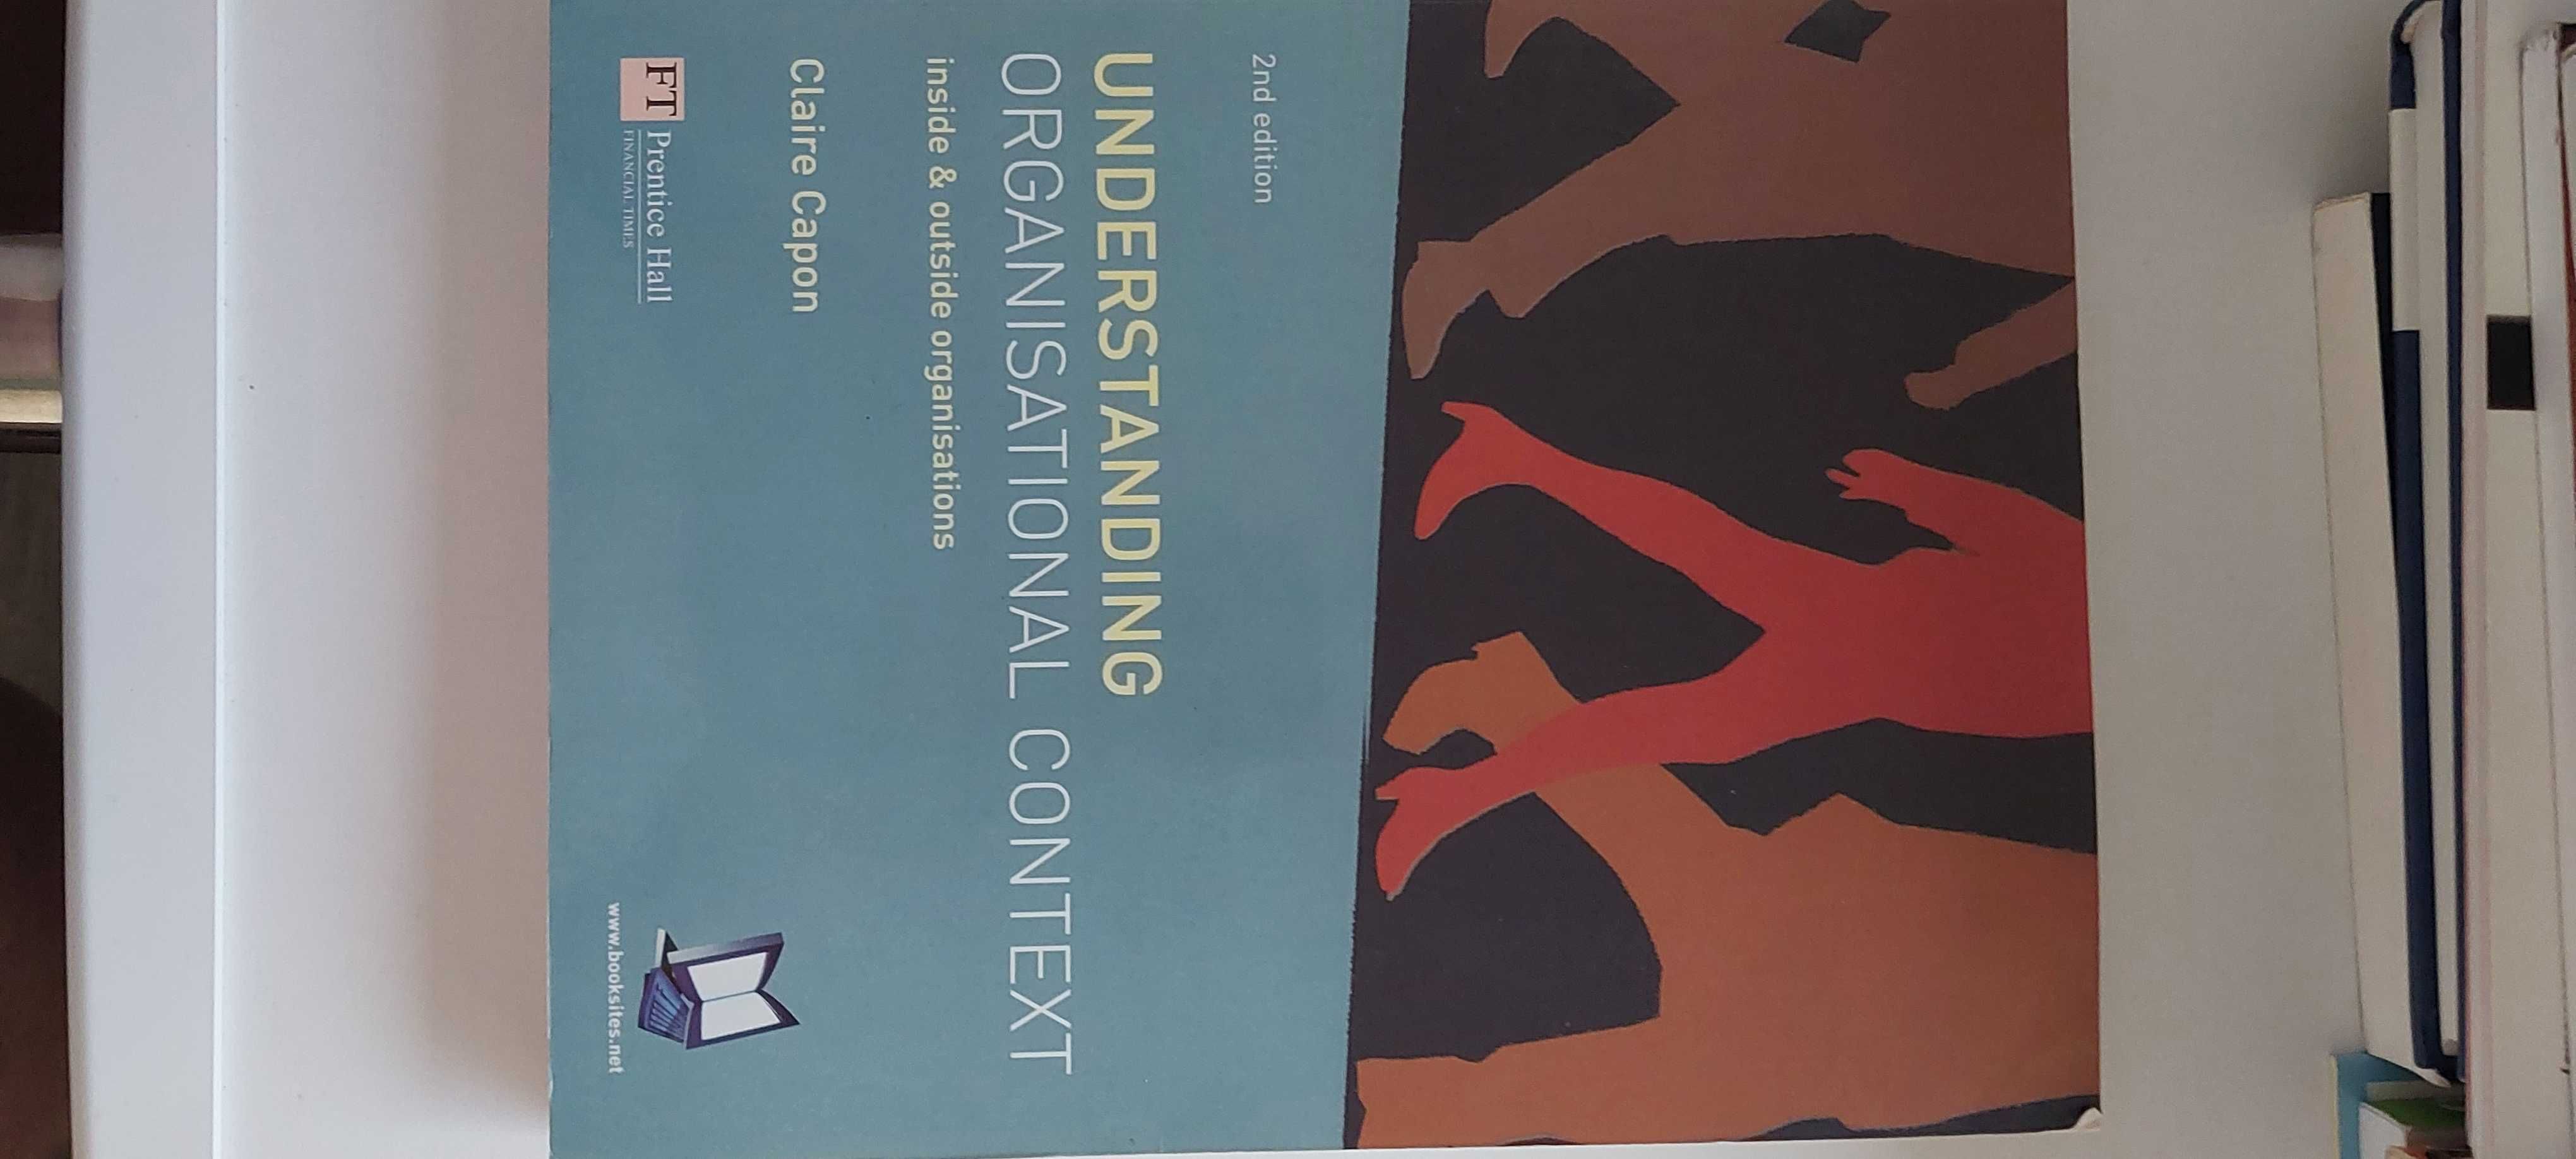 Książka w jęz ang pod zarządzanie: Understanding OrganisationalContext